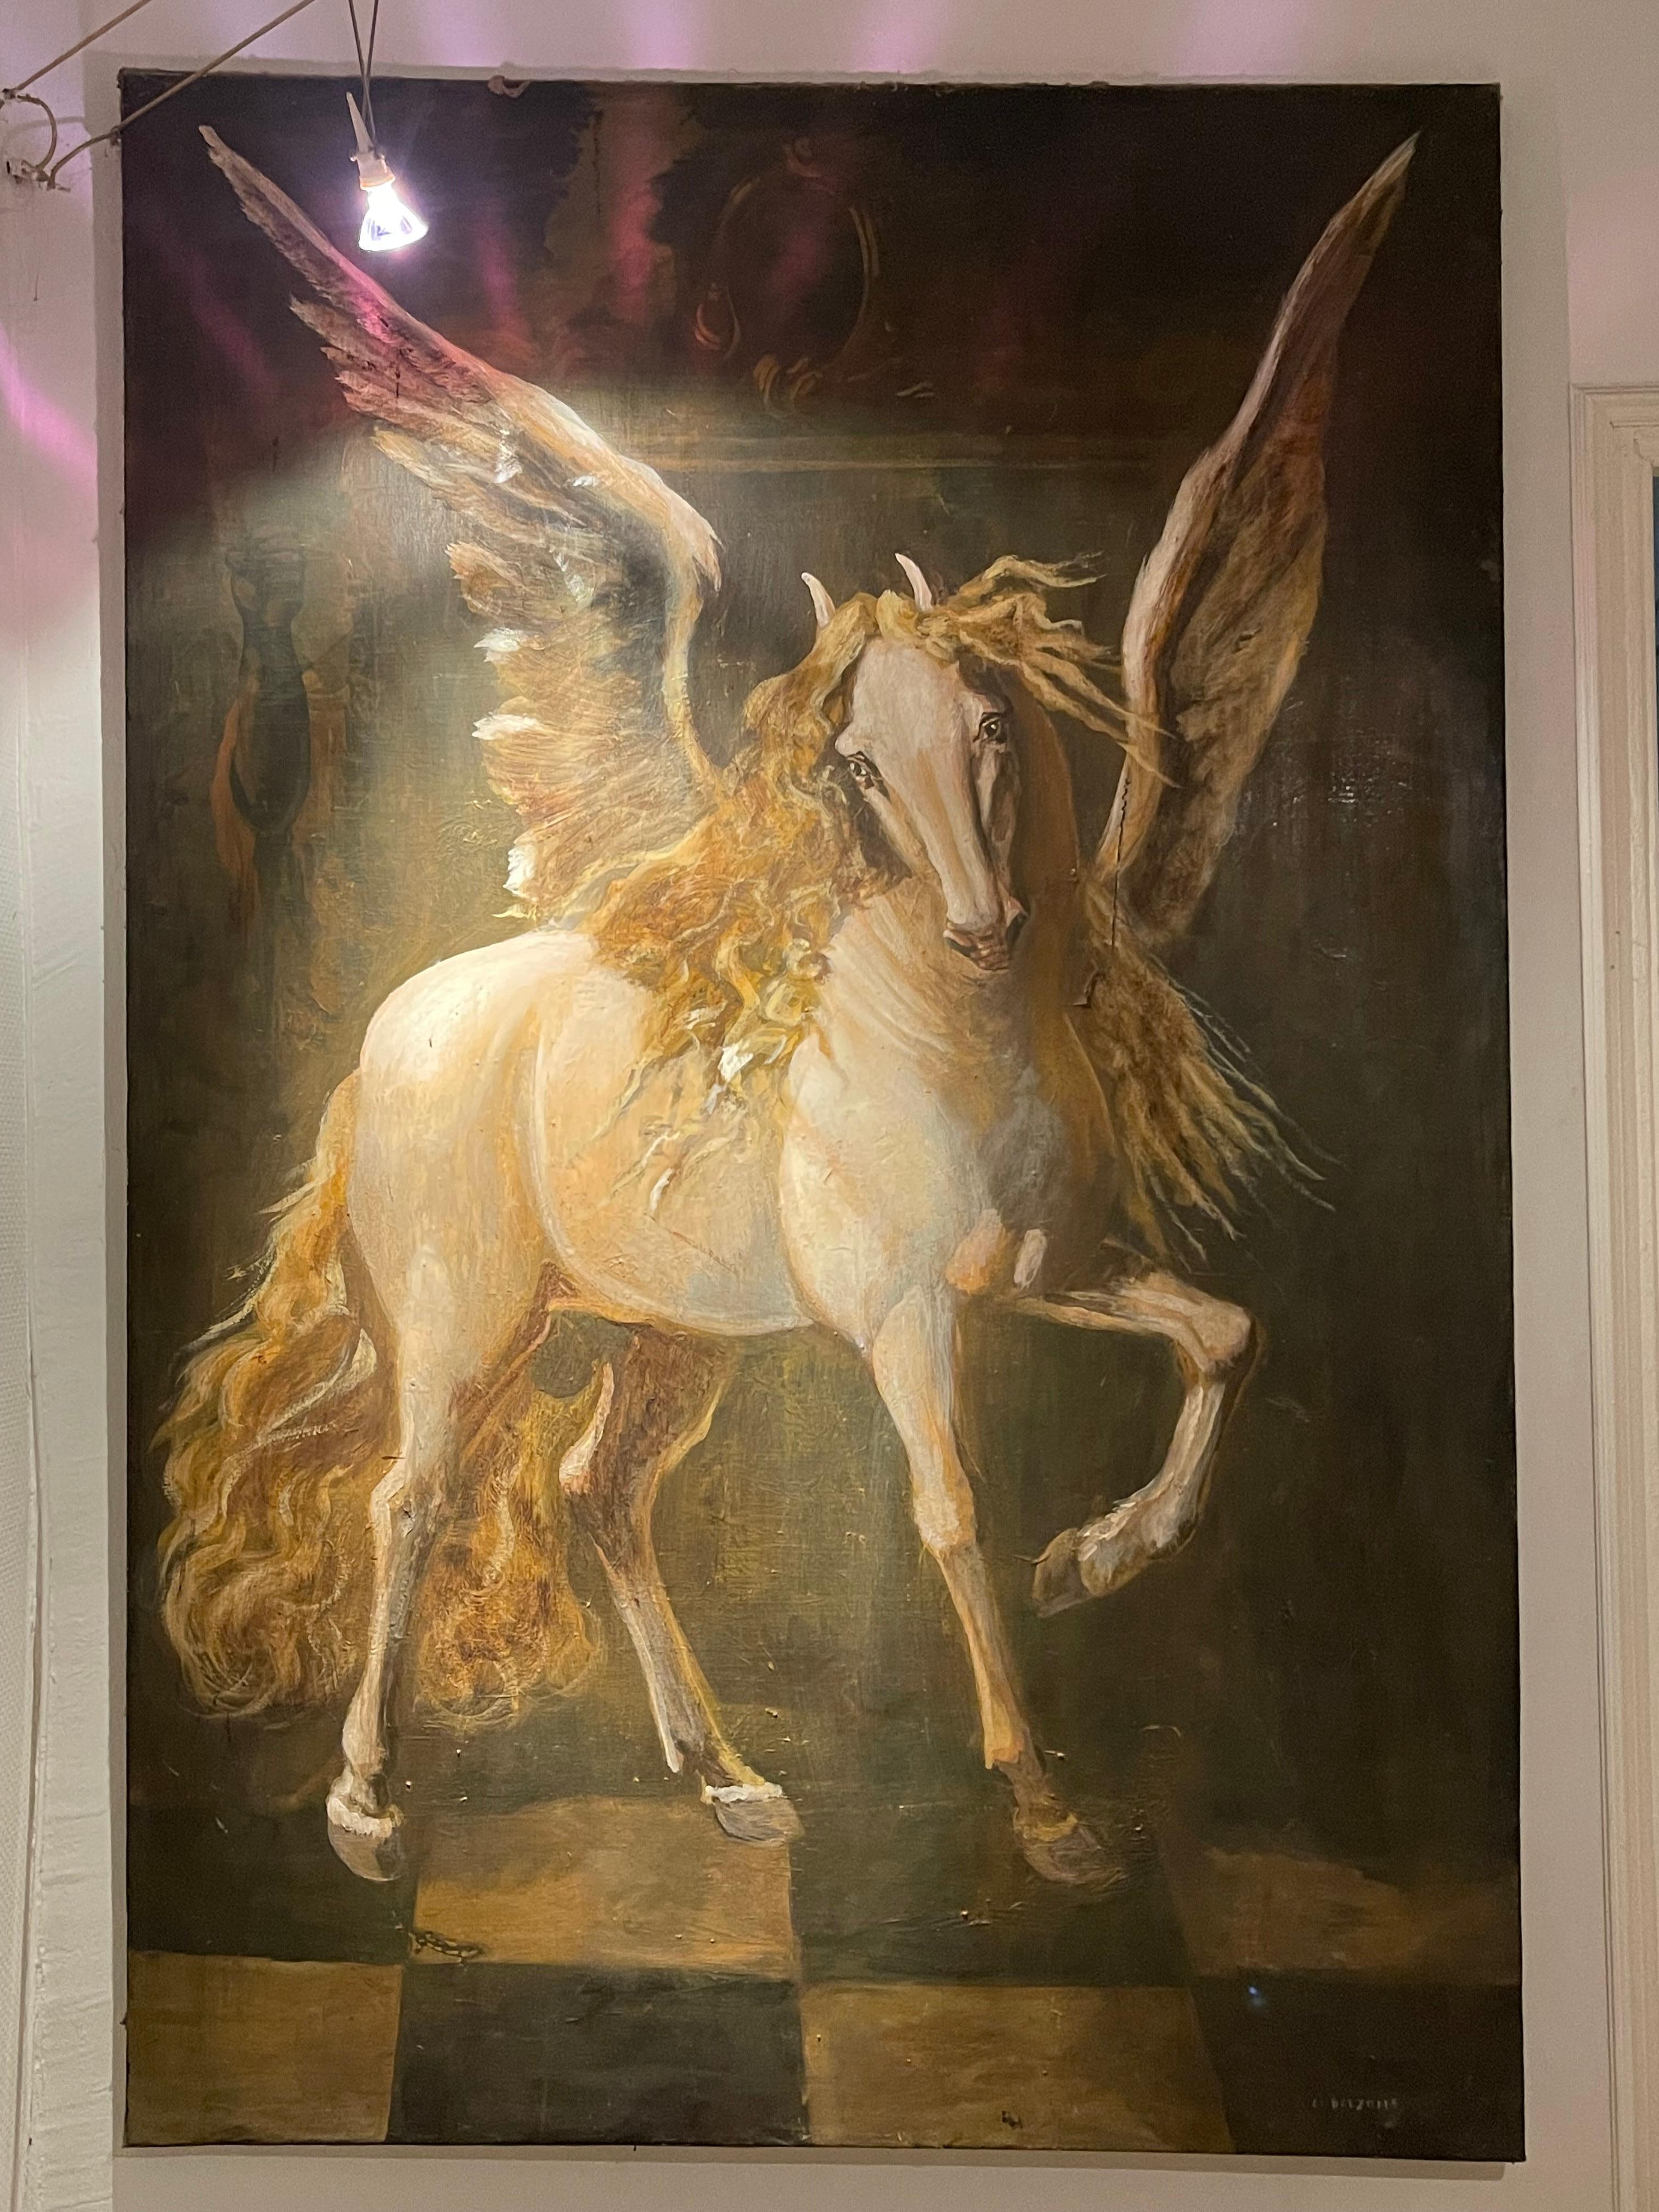 Pegasus par Manuel Bolzom - Catalunya 
La toile est endommagée sur 20 cm
